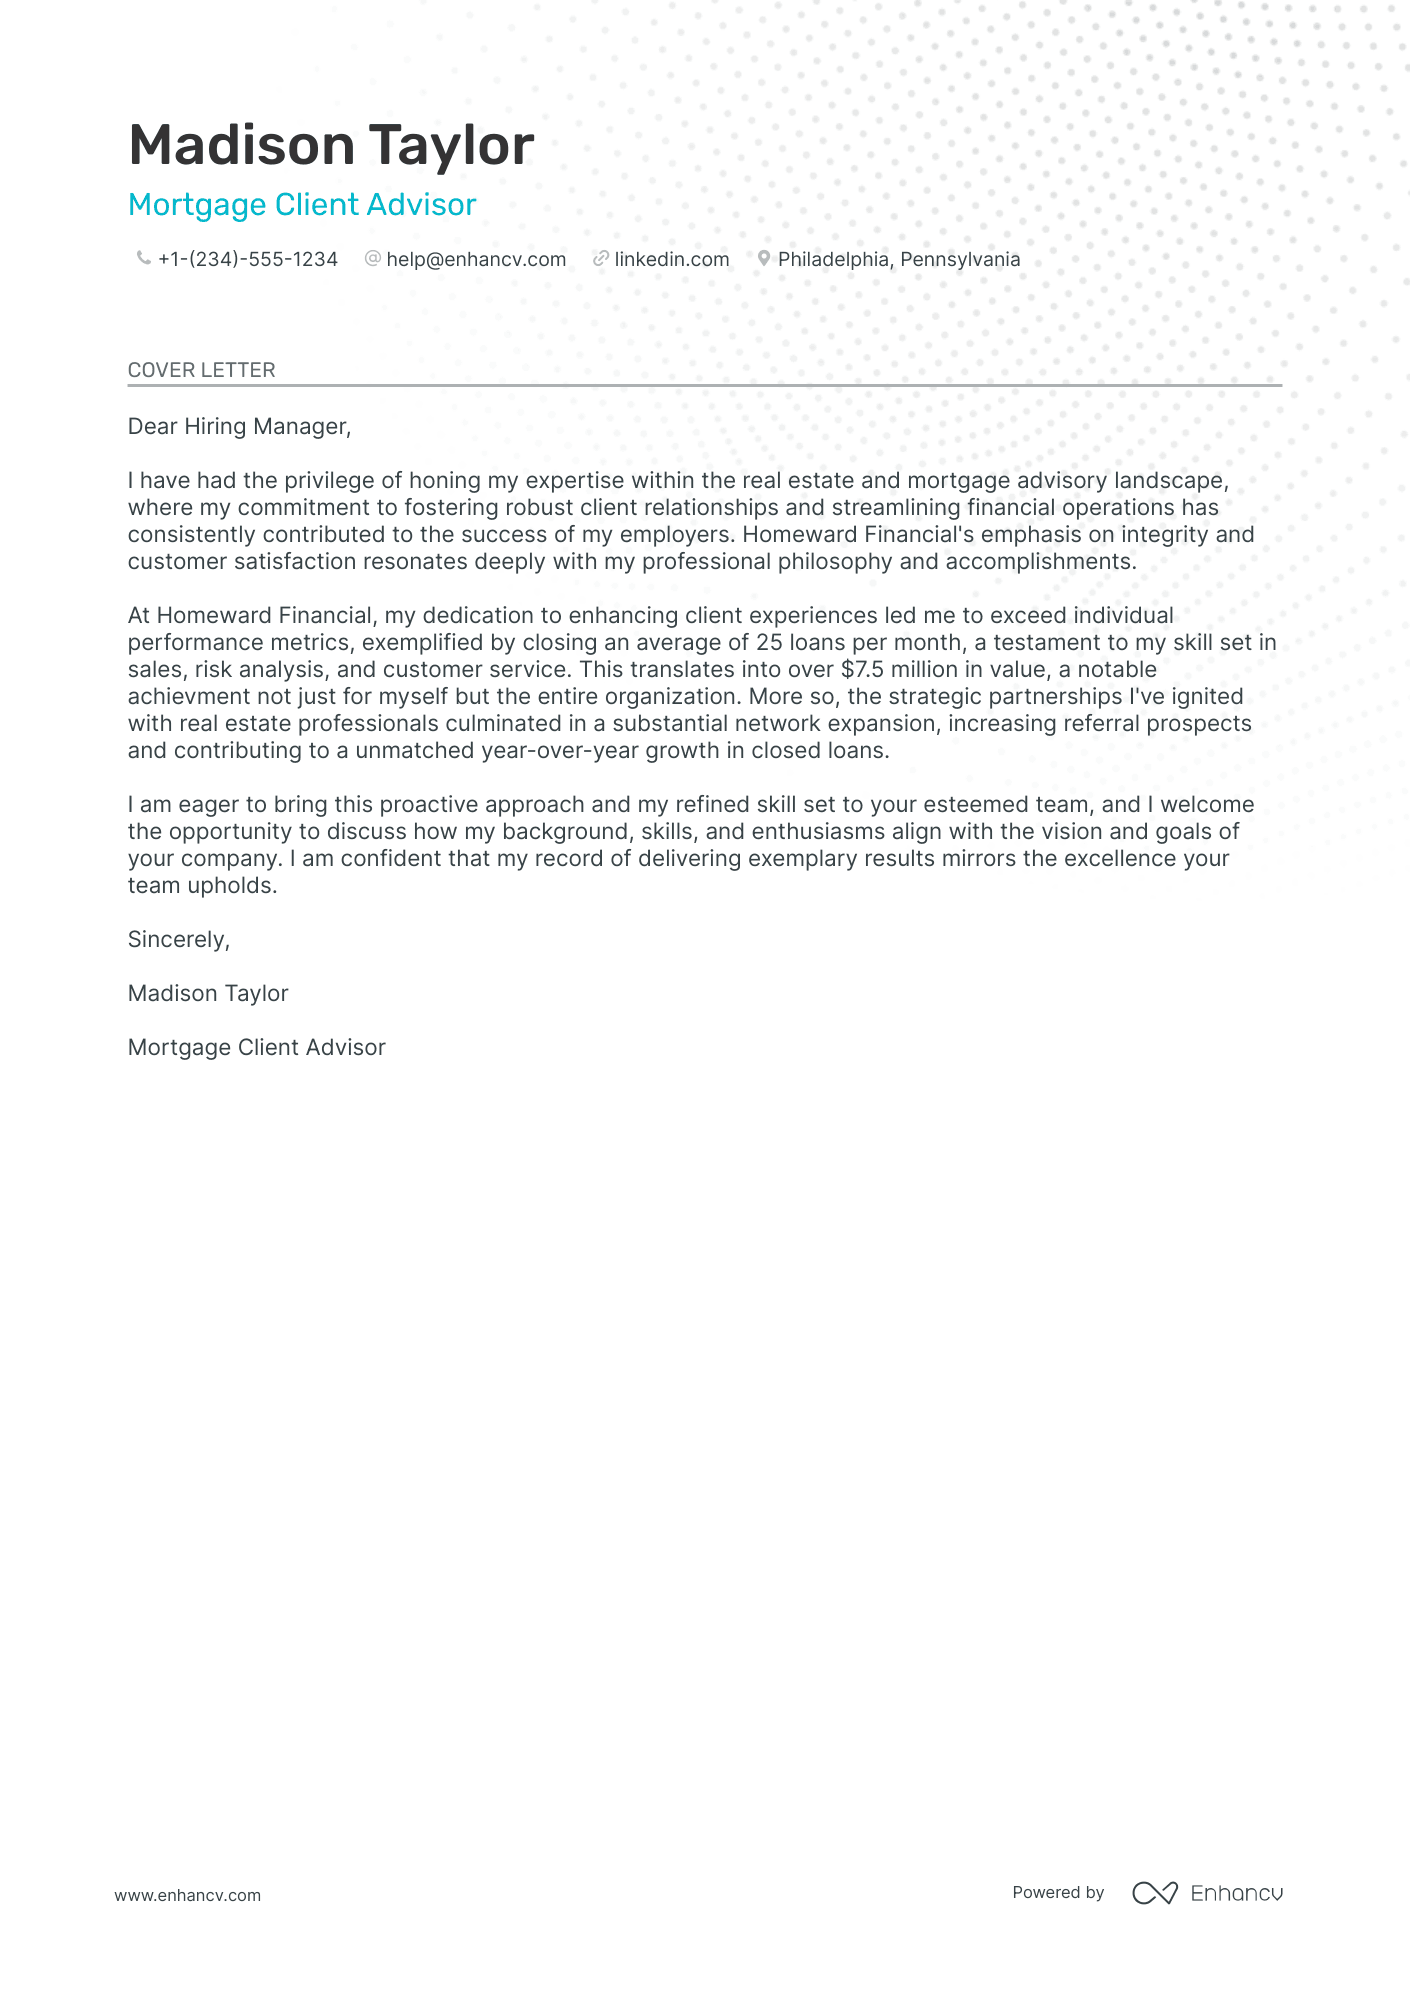 Loan Officer cover letter